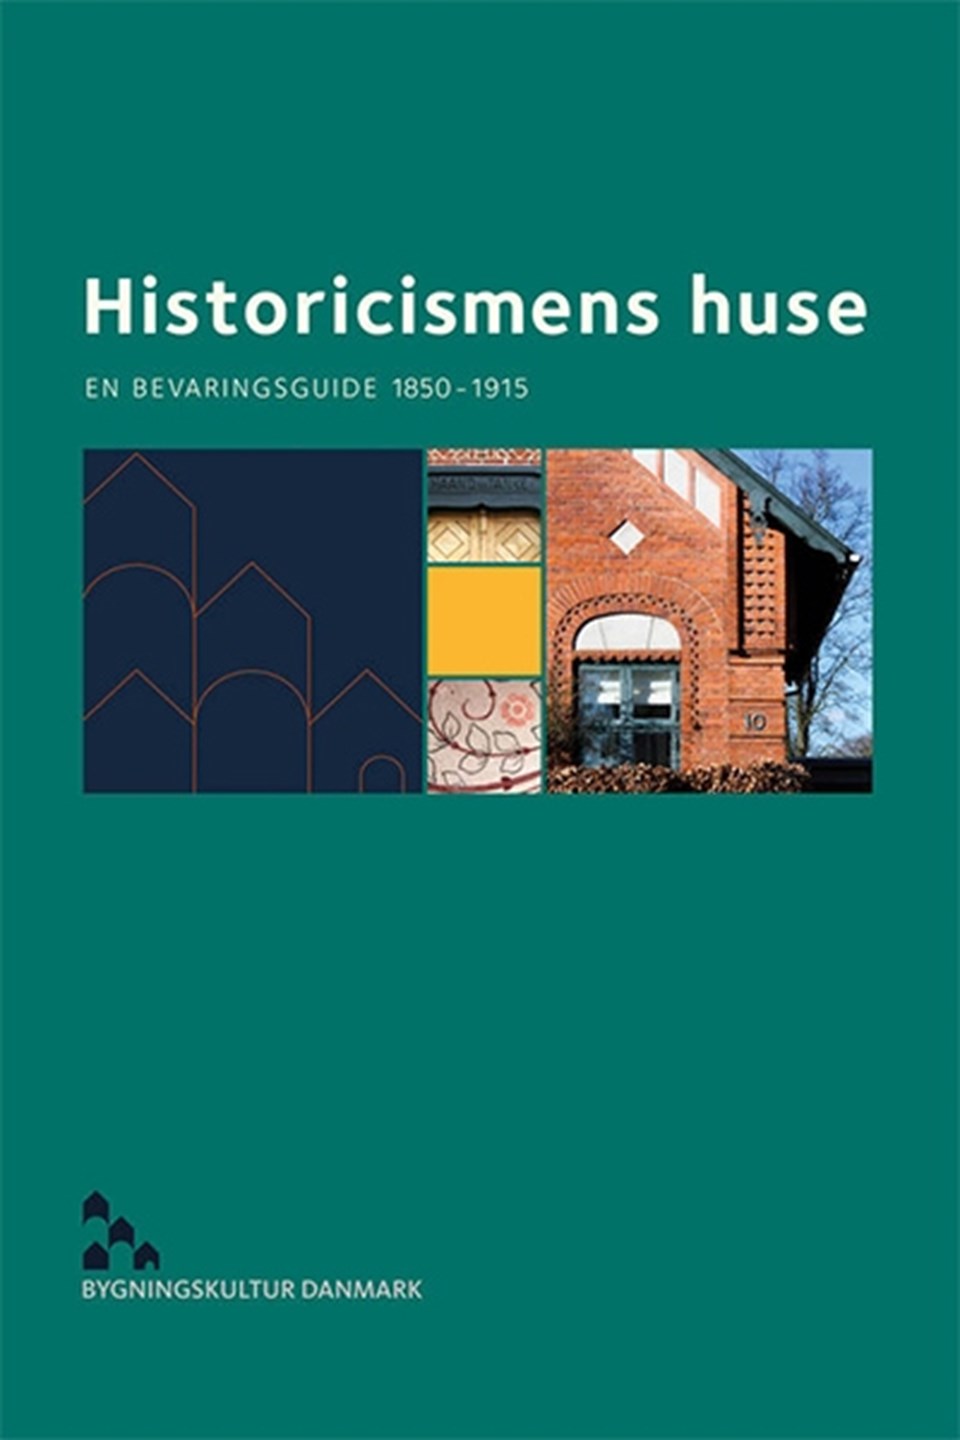 Historicismens huse - en bevaringsguide